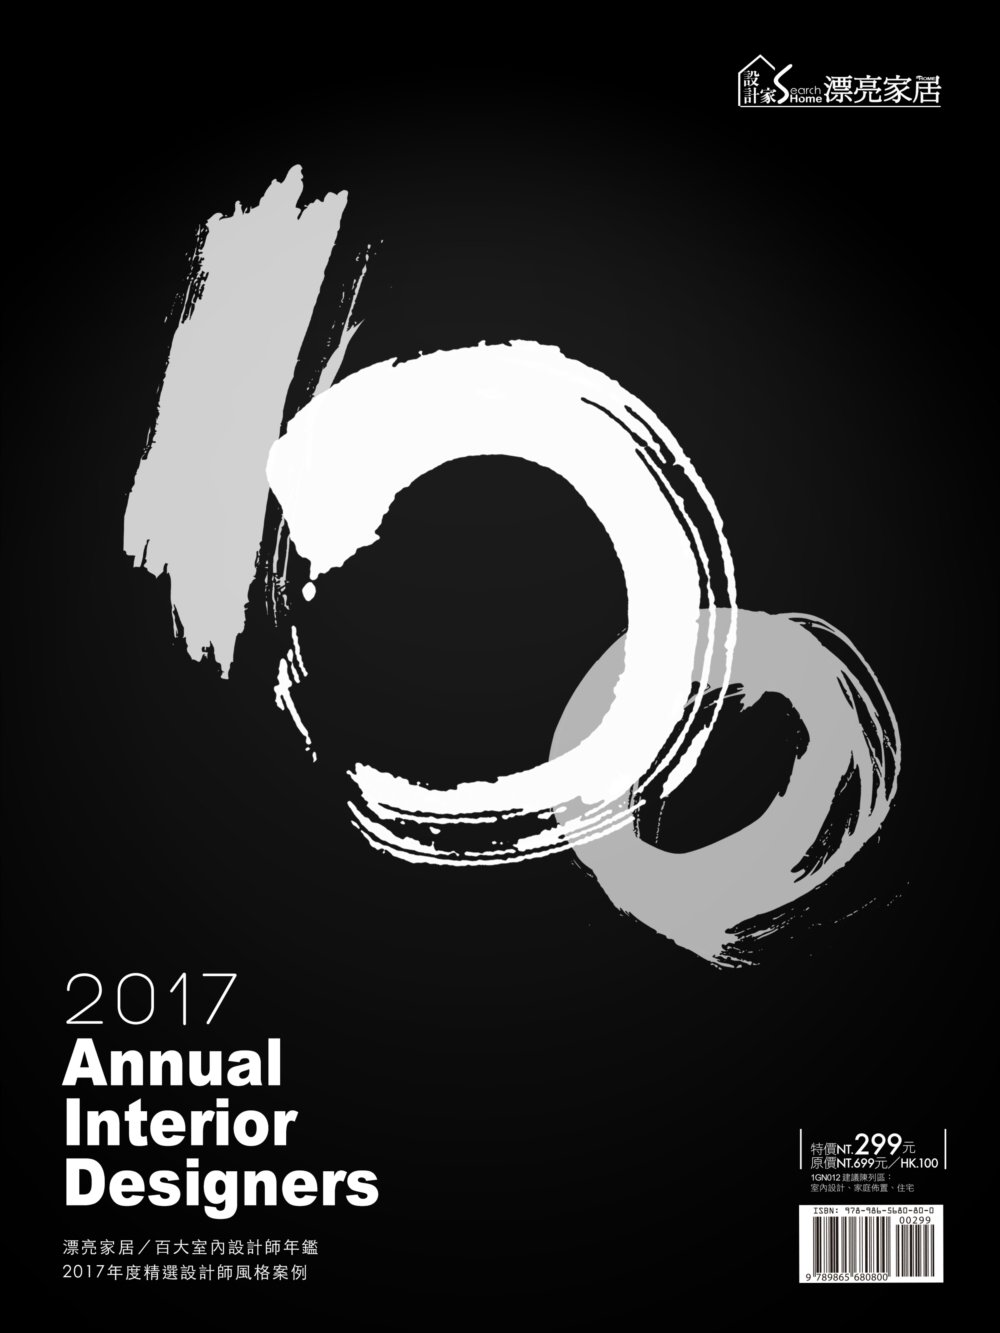 2017 Annual Interior Designers...